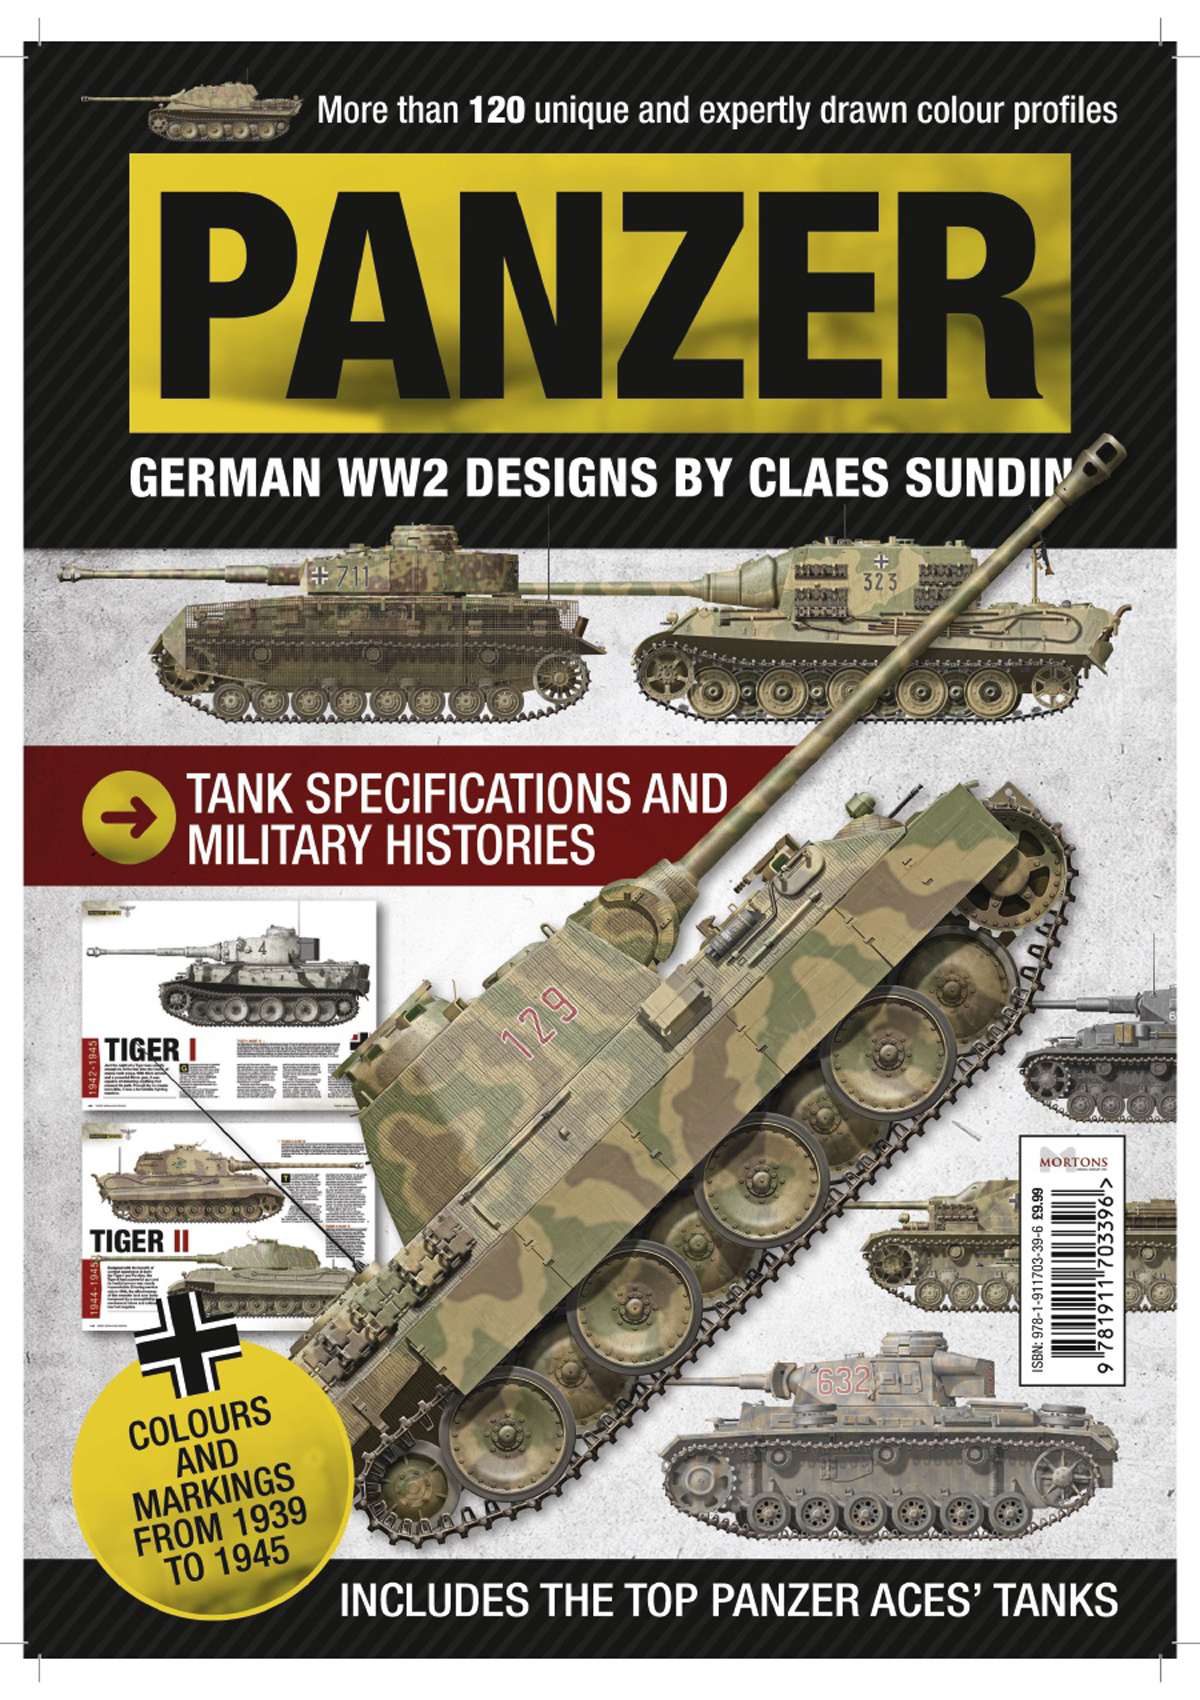 Panzer: German WW2 Tank Profiles